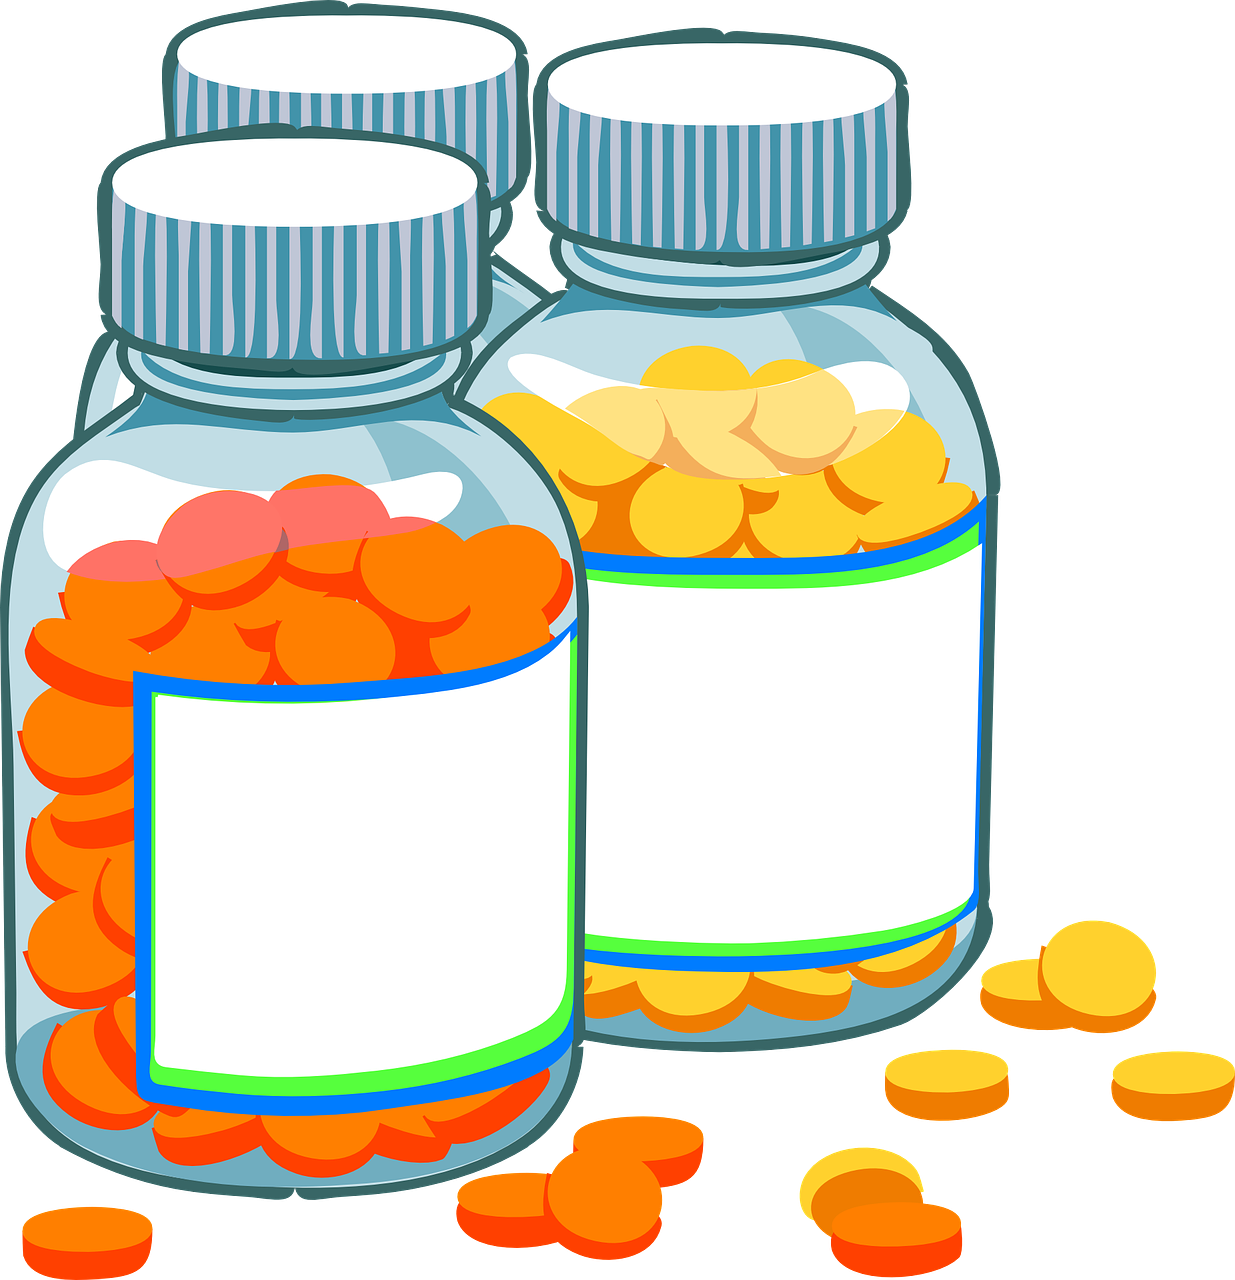 Medication Bottles Cartoon Illustration PNG image